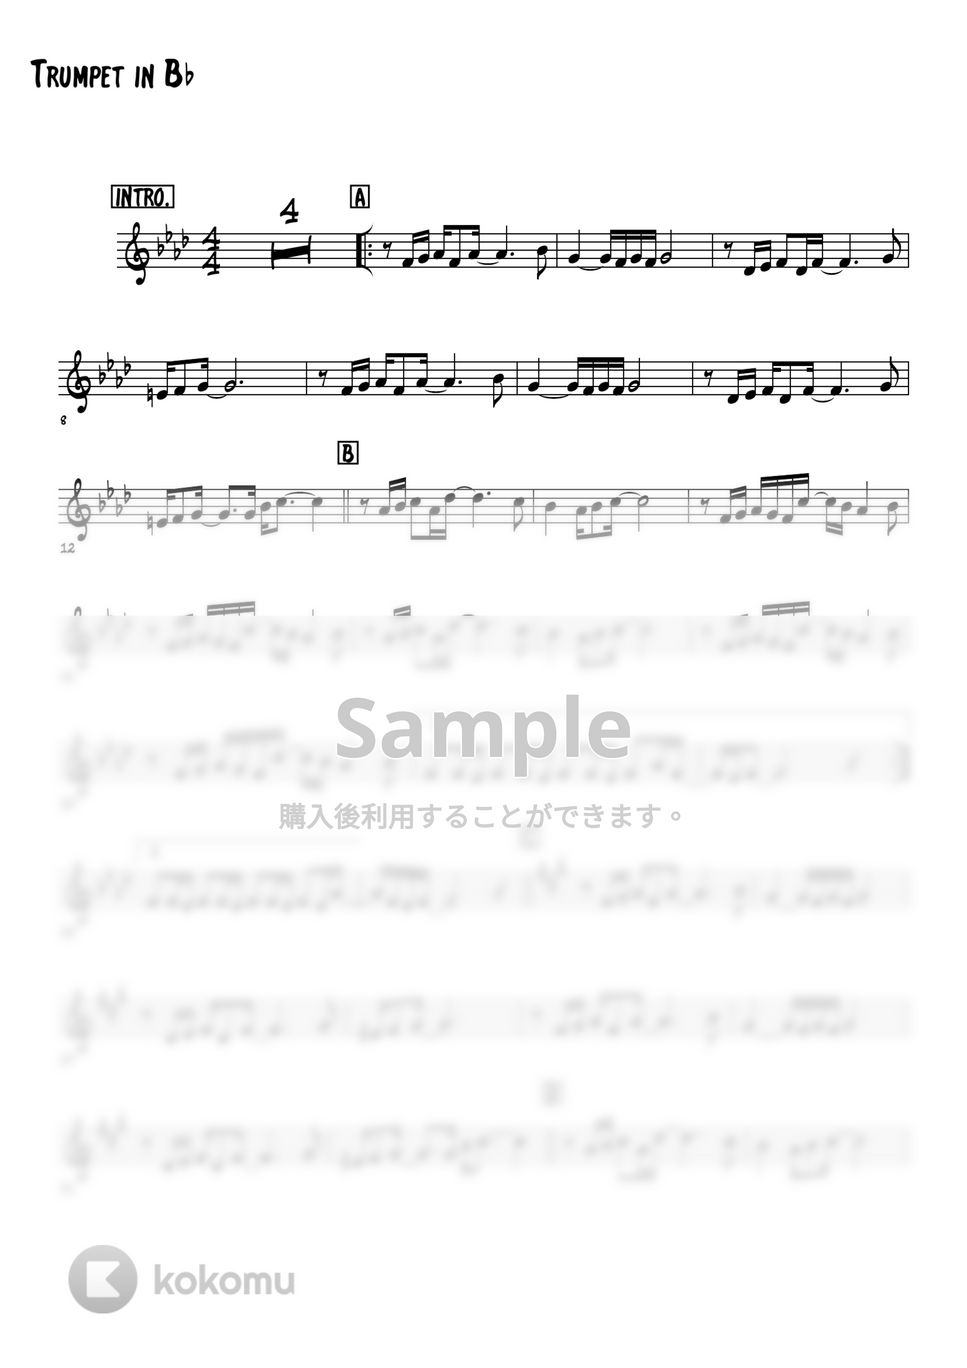 サーカス - Mr.サマータイム (トランペットメロディー楽譜) by 高田将利